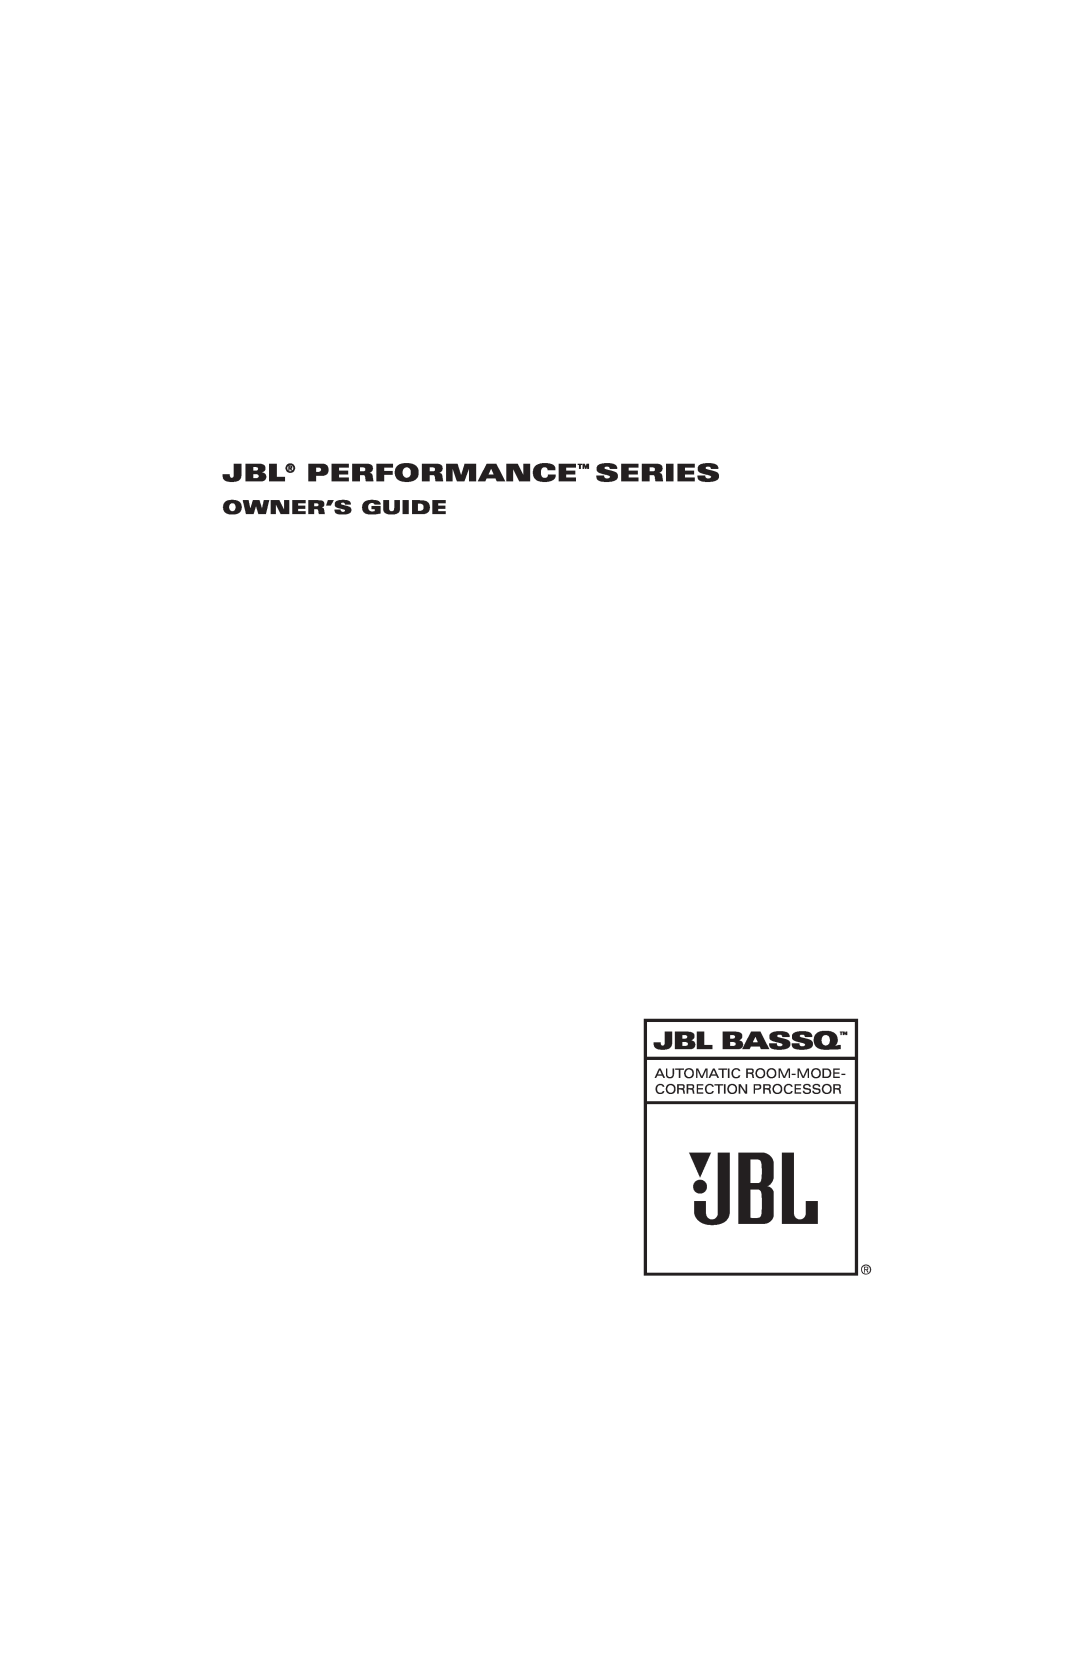 JBL Professional BASSQ manual Jbl Performance Series, Jbl Bassq, Owner’S Guide 